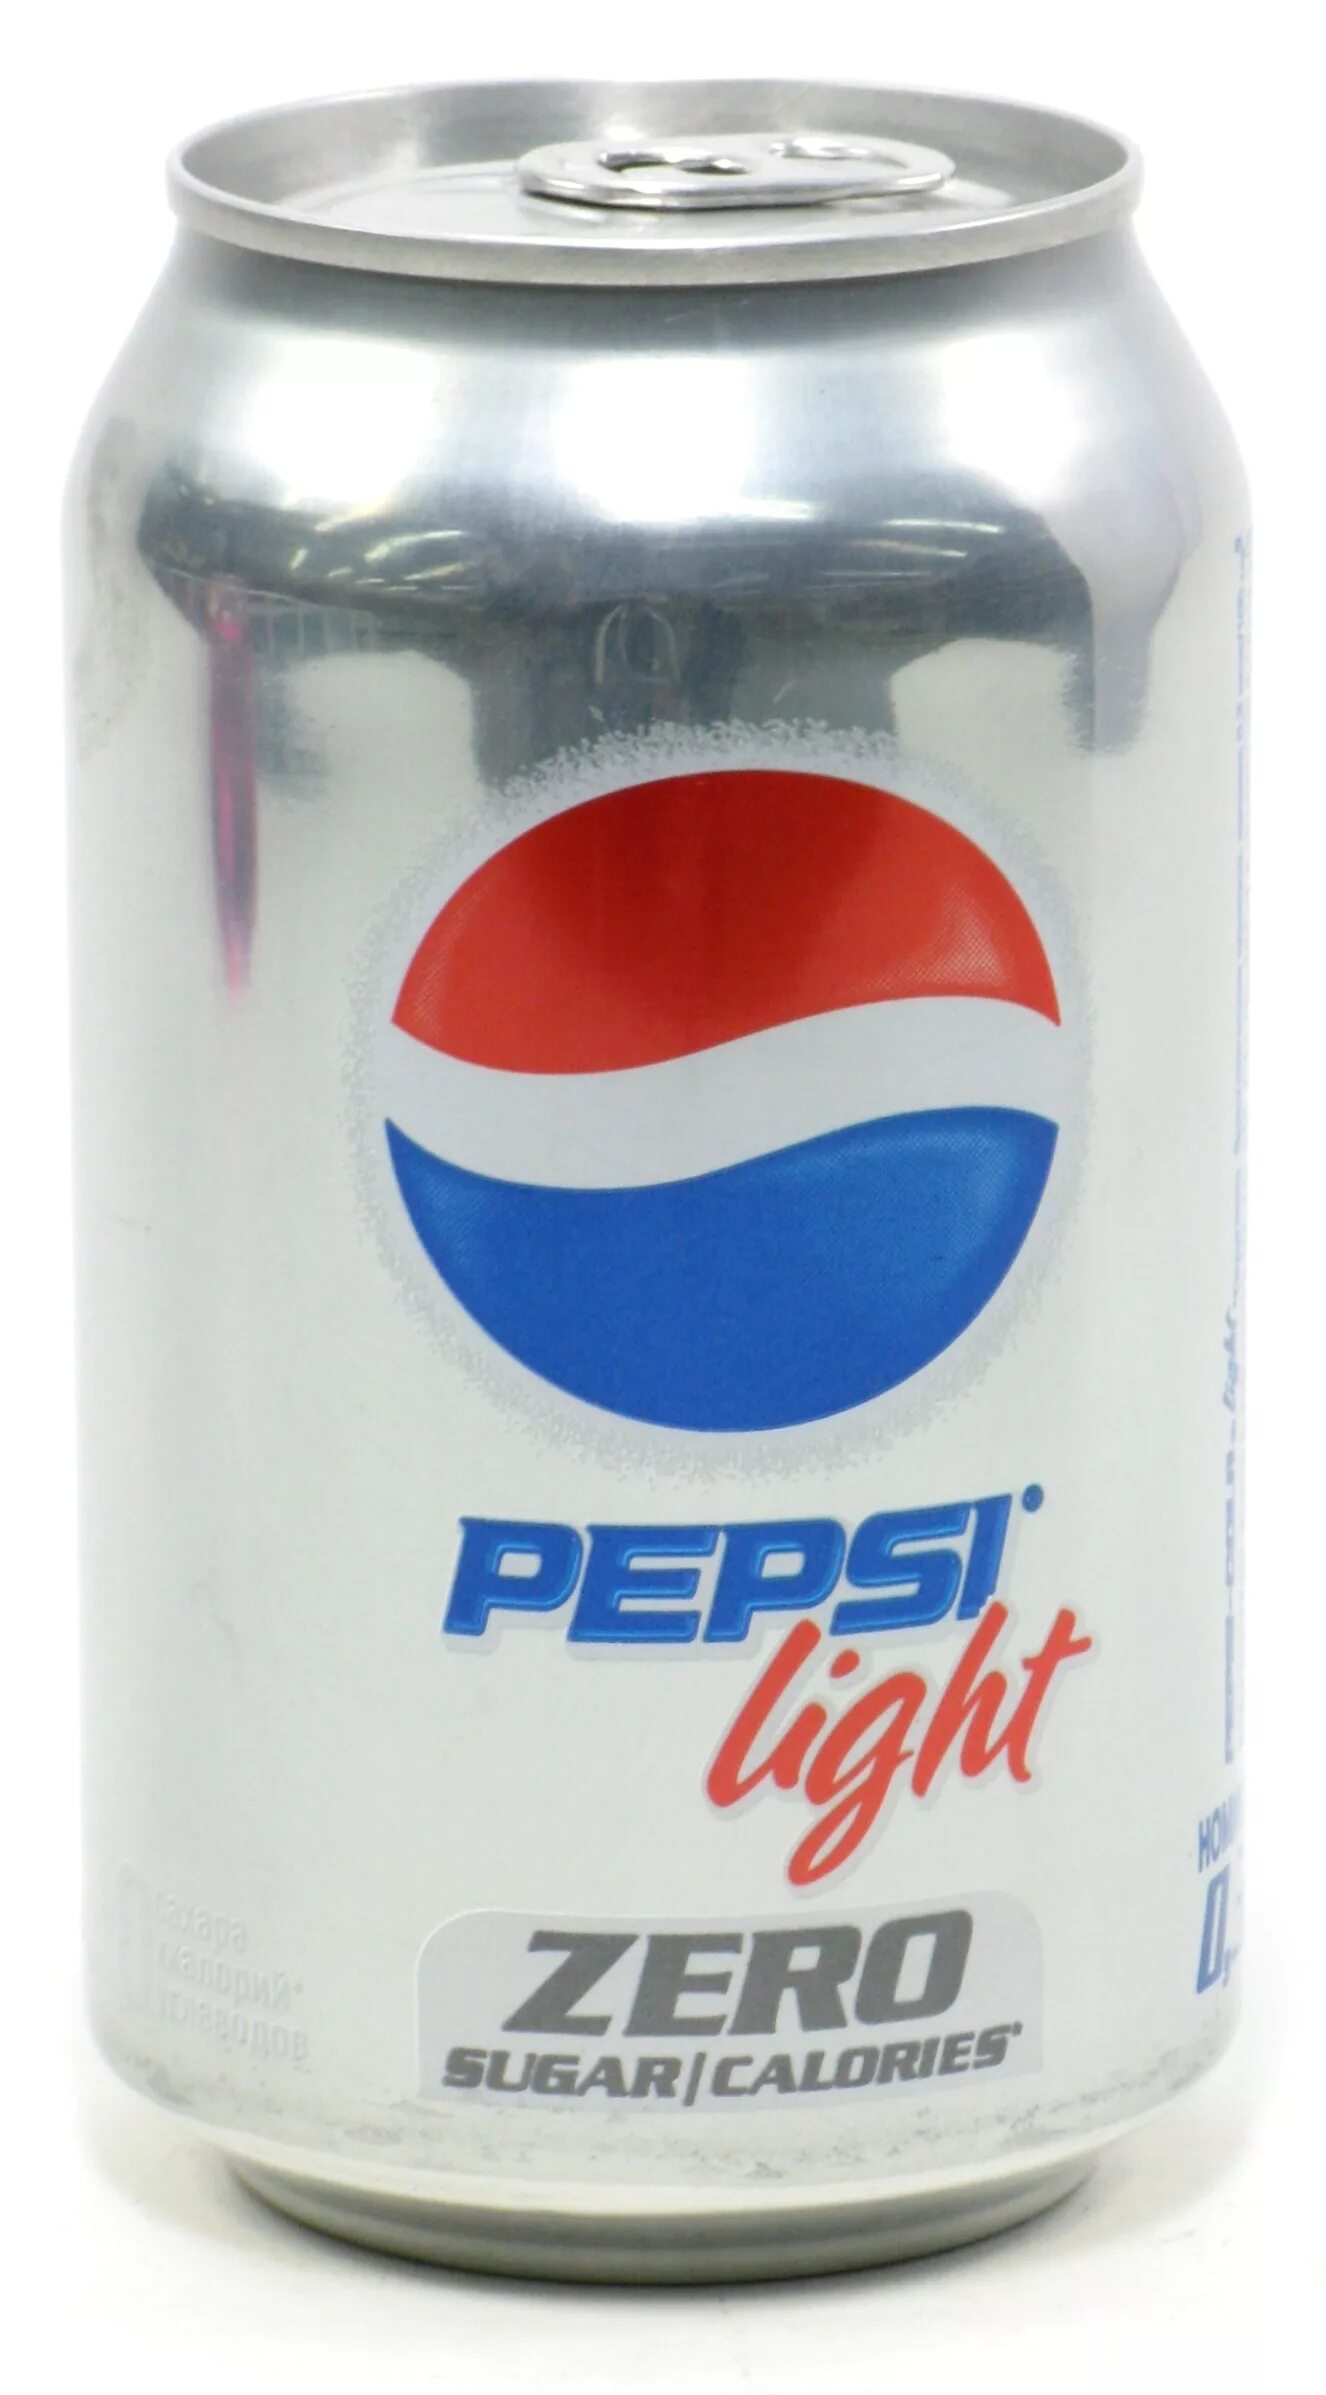 Ж б 0 33л. Pepsi Light 0,33 жб. ГАЗ. Вода пепси 0.33л ж\б. Пепси 033 жб. Напиток газированный Pepsi Light, 0.33л.